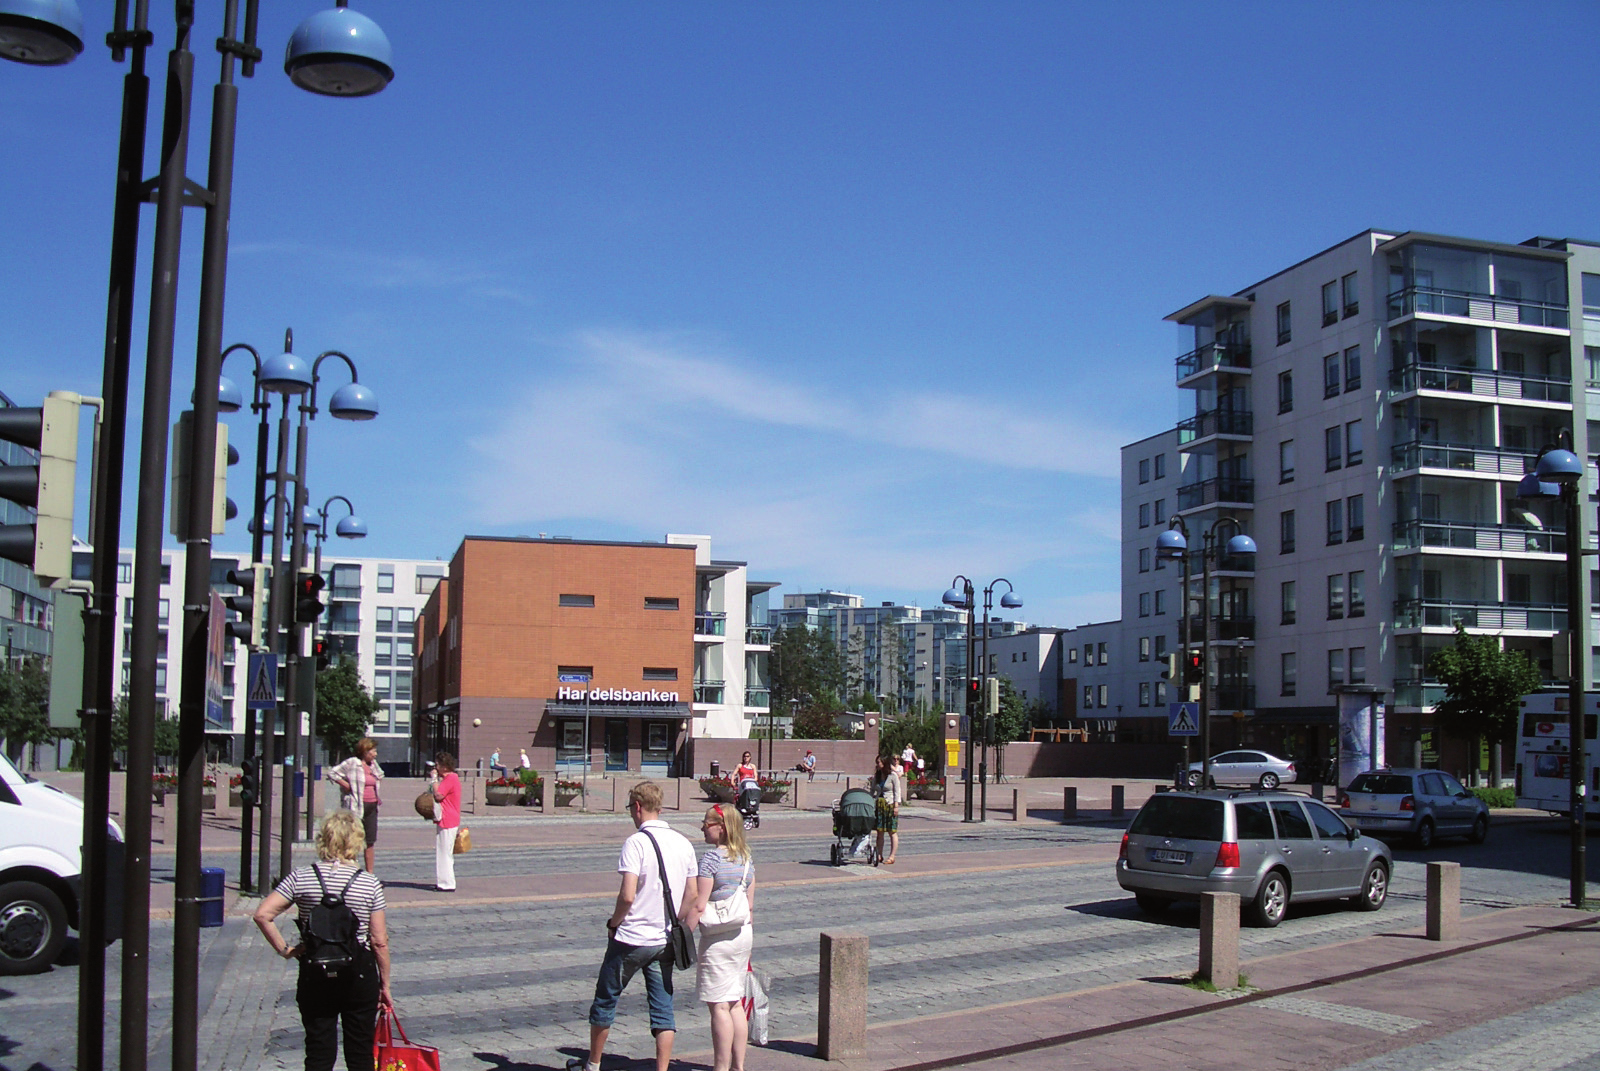 Muuttovoittona lisäyksestä tuli 1 362 henkeä eli 37 % kasvusta. Espooseen muuttaneista oli ruotsinkielisiä 5,0 % ja lähteneistä 6,6 %. Ruotsinkielisistä Espoo kärsi muuttotappiota 180 henkeä.